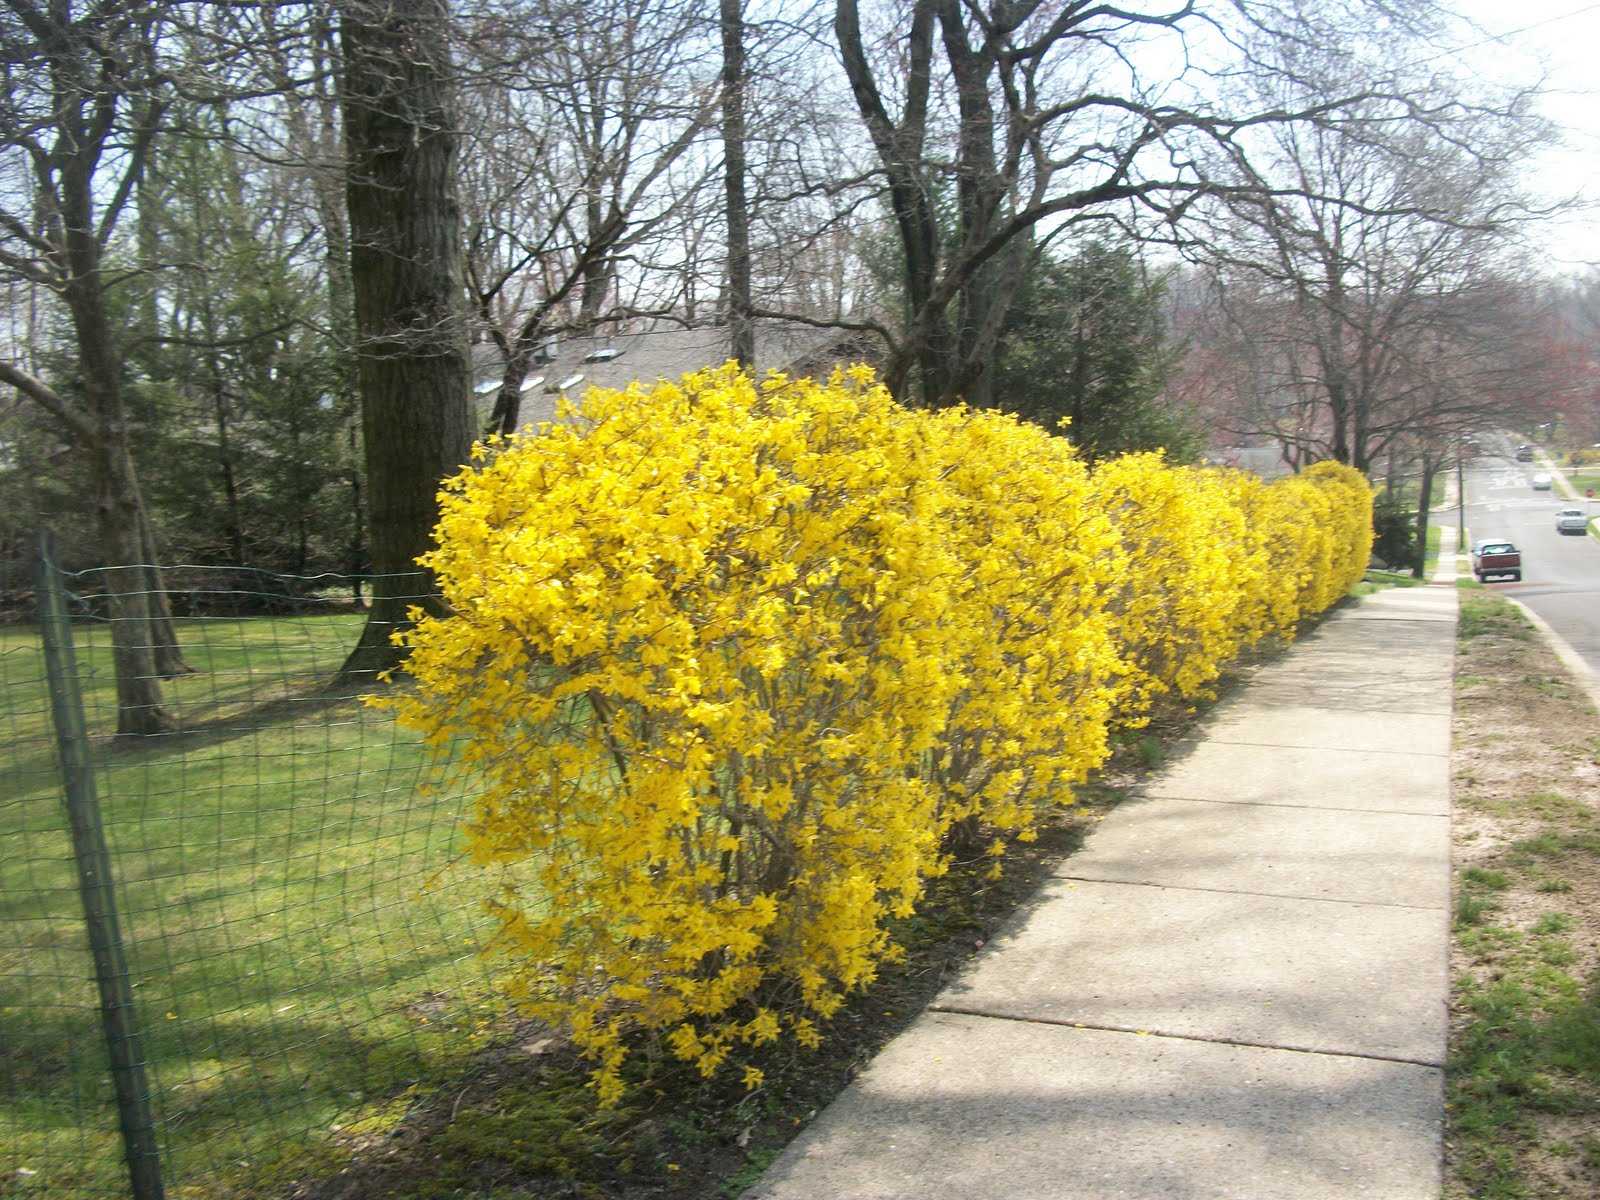 Форзиция с желтыми листьями название и фото